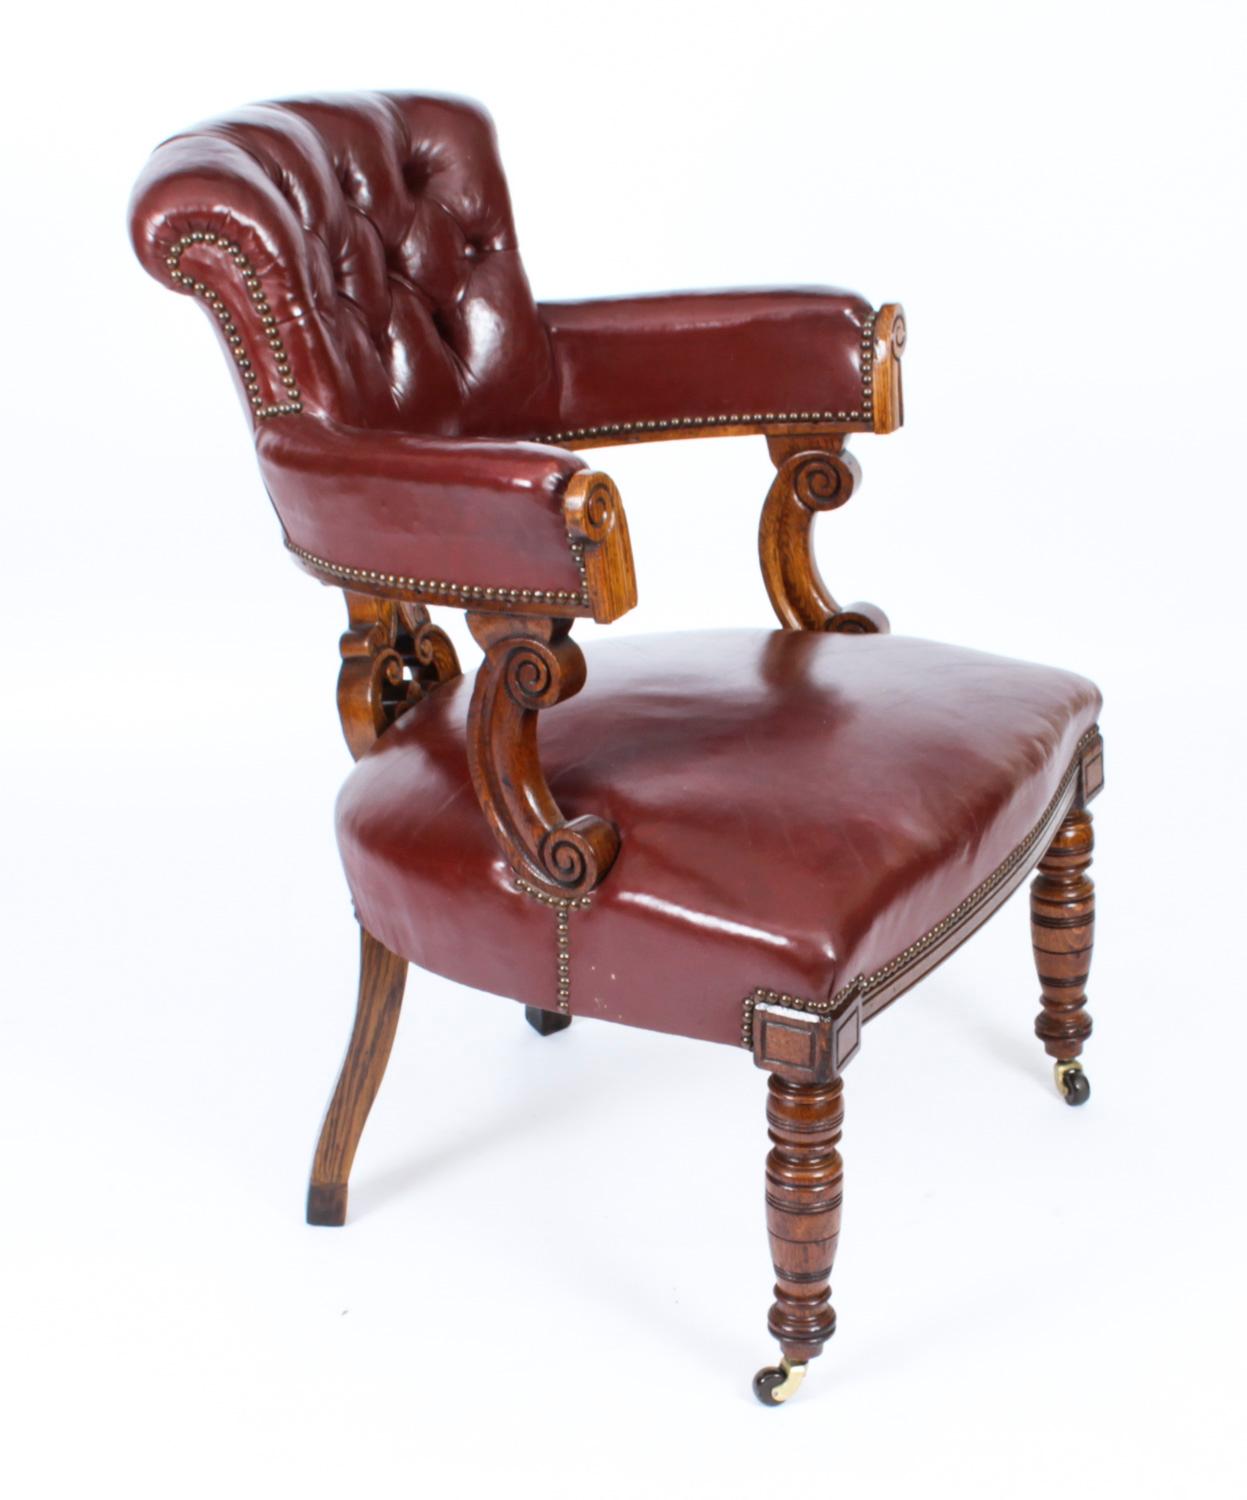 Élégante chaise de bureau victorienne en chêne sculpté à dossier à boutons, tapissée de cuir marron et reposant sur des pieds tournés, datant de 1880 environ.

Ajoutez cette chaise élégante et confortable à votre collection.
 
Condition :
En